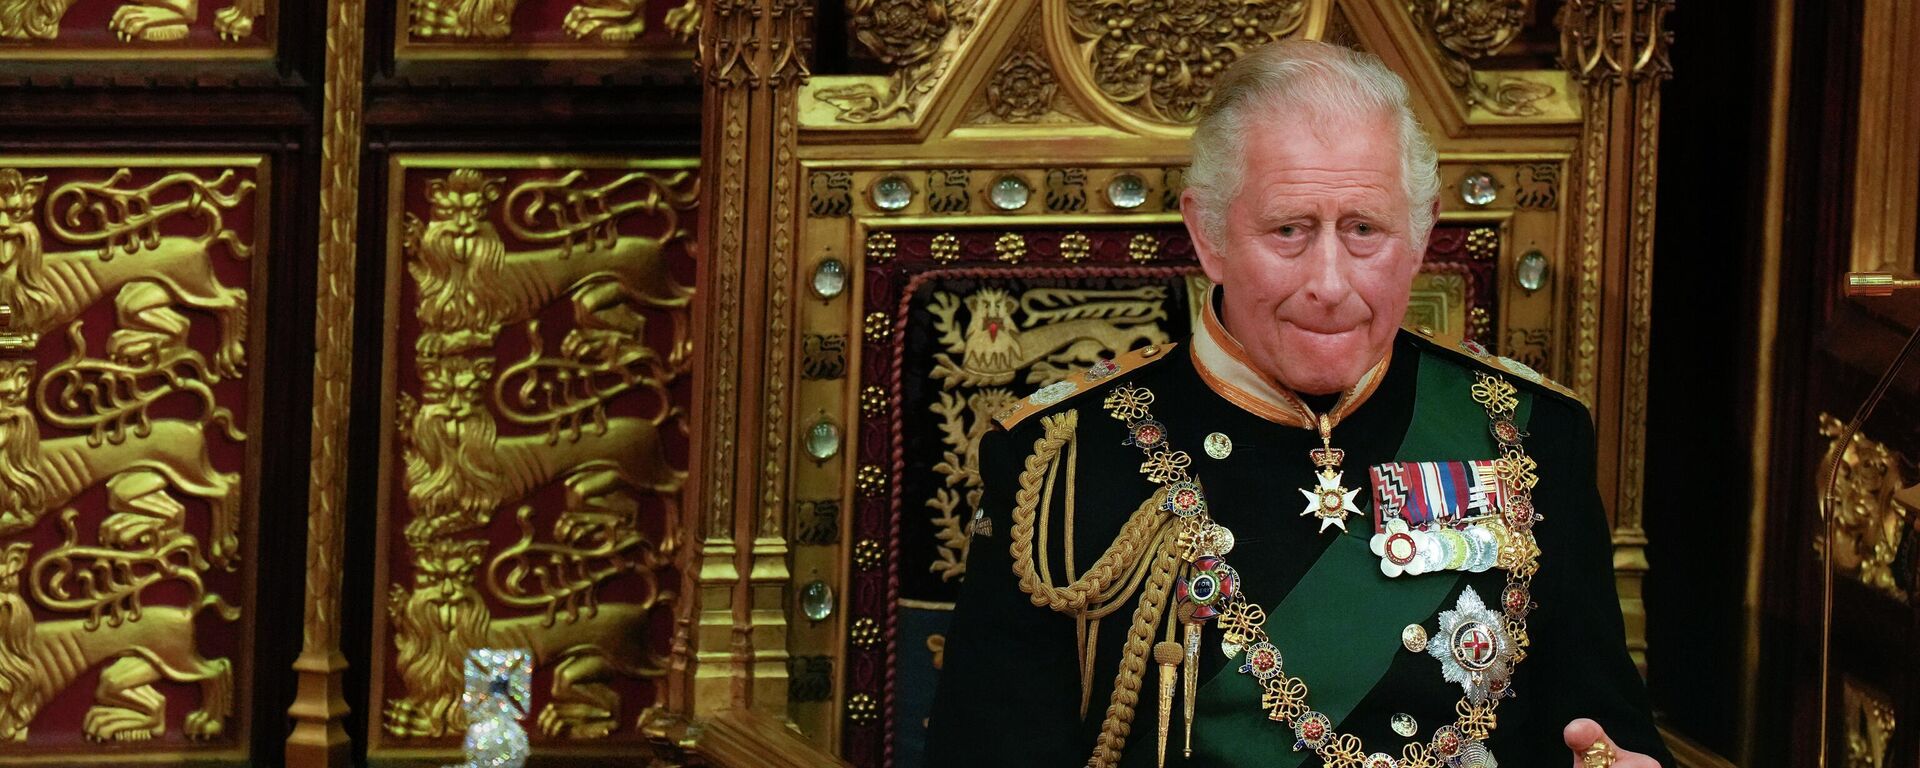 İngiltere Kraliçesi 2. Elizabeth'in en büyük oğlu Charles halktan hiçbir zaman annesinin topladığı kadar destek toplayamadı. İngiliz medyasına göre bu durum, yeni Kral Charles'ı bazı zorluklarla karşı karşıya bırakabilir. 
Charles ilk eşi Diana'ya karşı soğuk davranma gibi suçlamalarla gündeme geldiği 1990'lı yıllardan bu yana halkla ilişkiler konusunda ciddi sorunlarla karşılaştı. Her ne kadar son yıllarda basında daha olumlu bir imaja sahip olsa da Prens Charles mesafeli duruşu nedeniyle medyada diğer kraliyet üyelerinden daha kolay hedef alındı. - Sputnik Türkiye, 1920, 12.12.2022